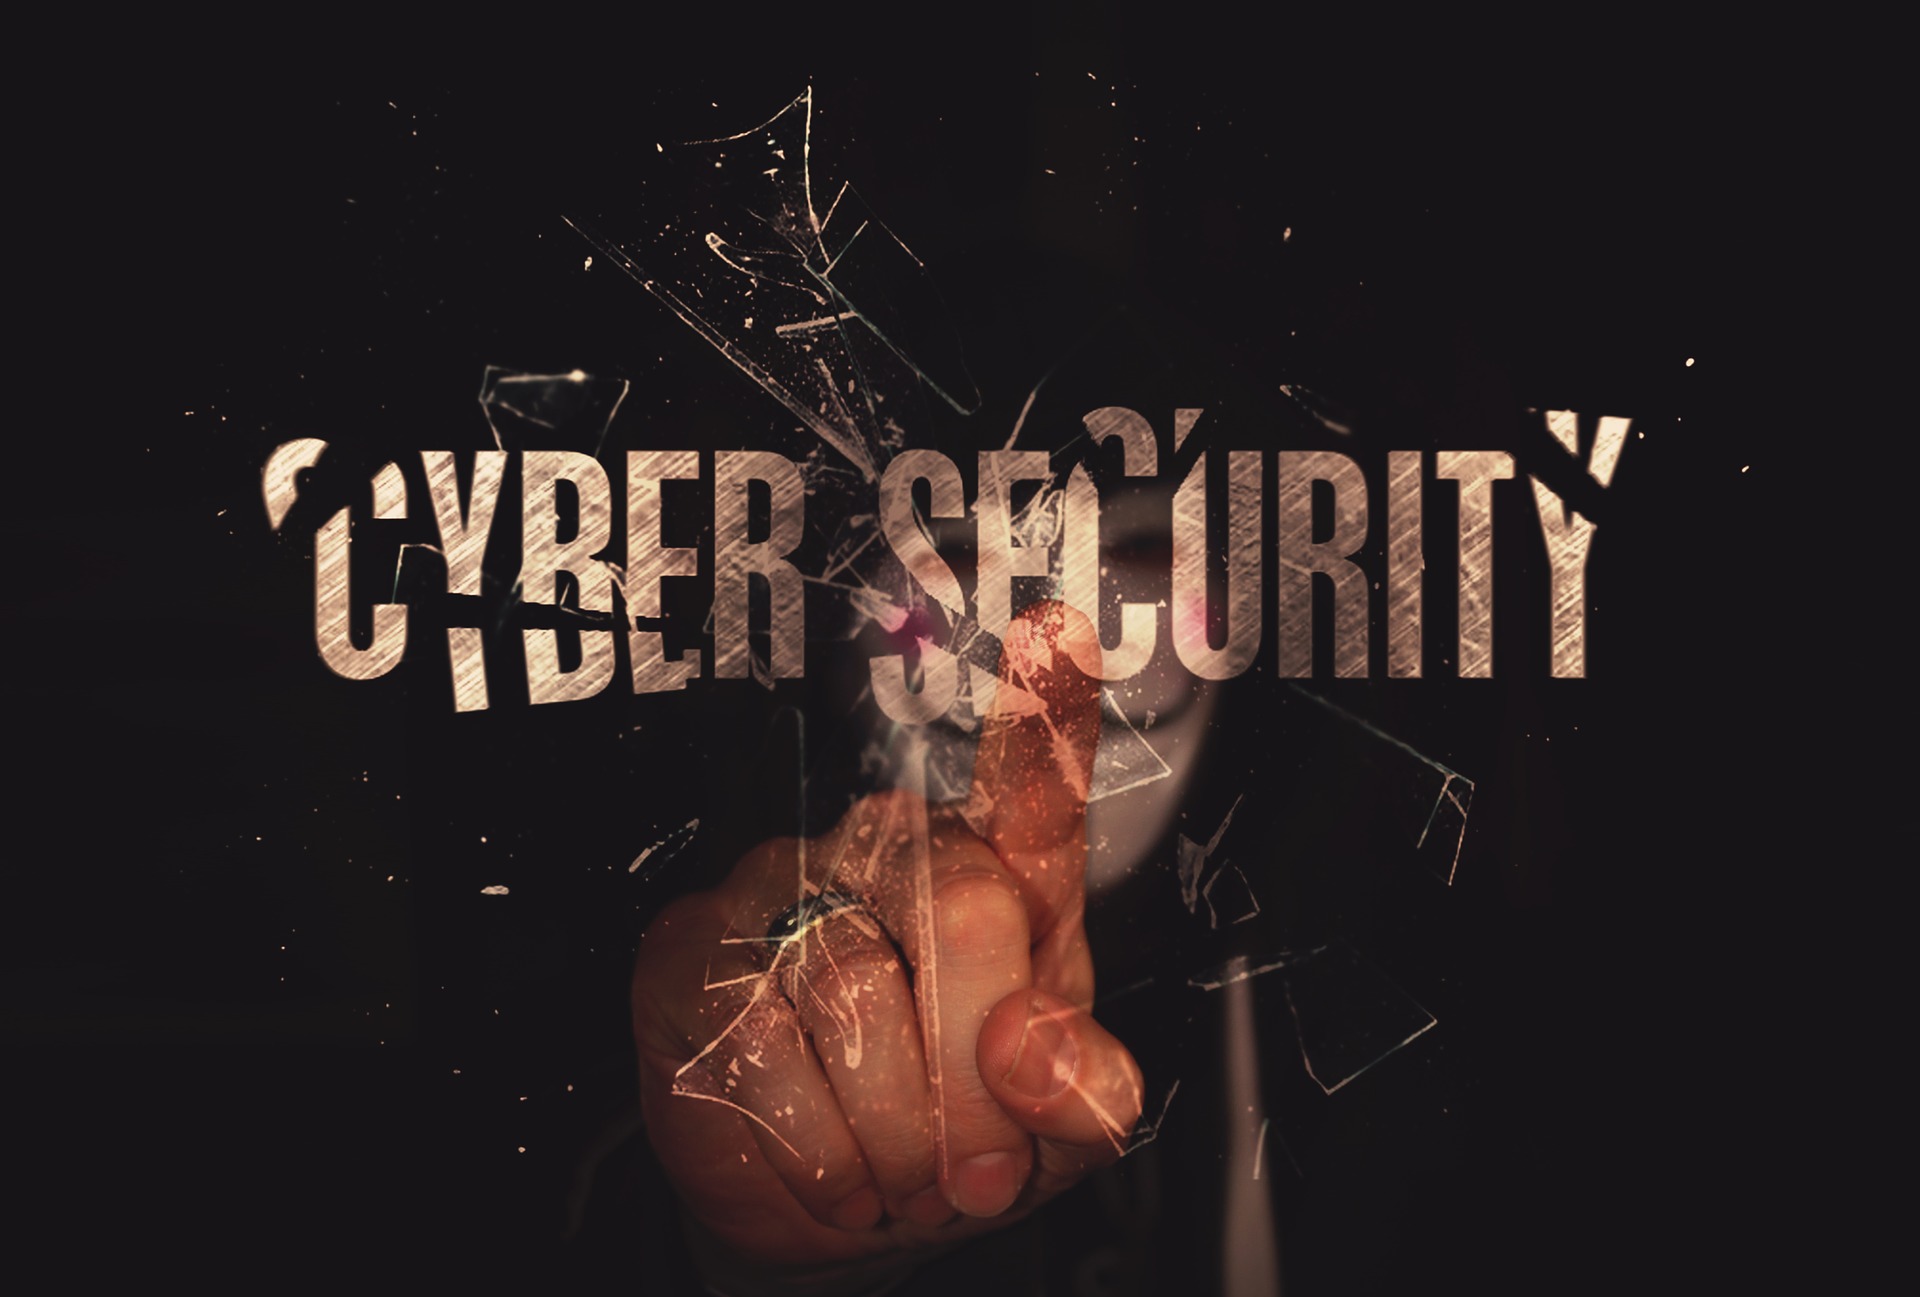 cybersecuritya